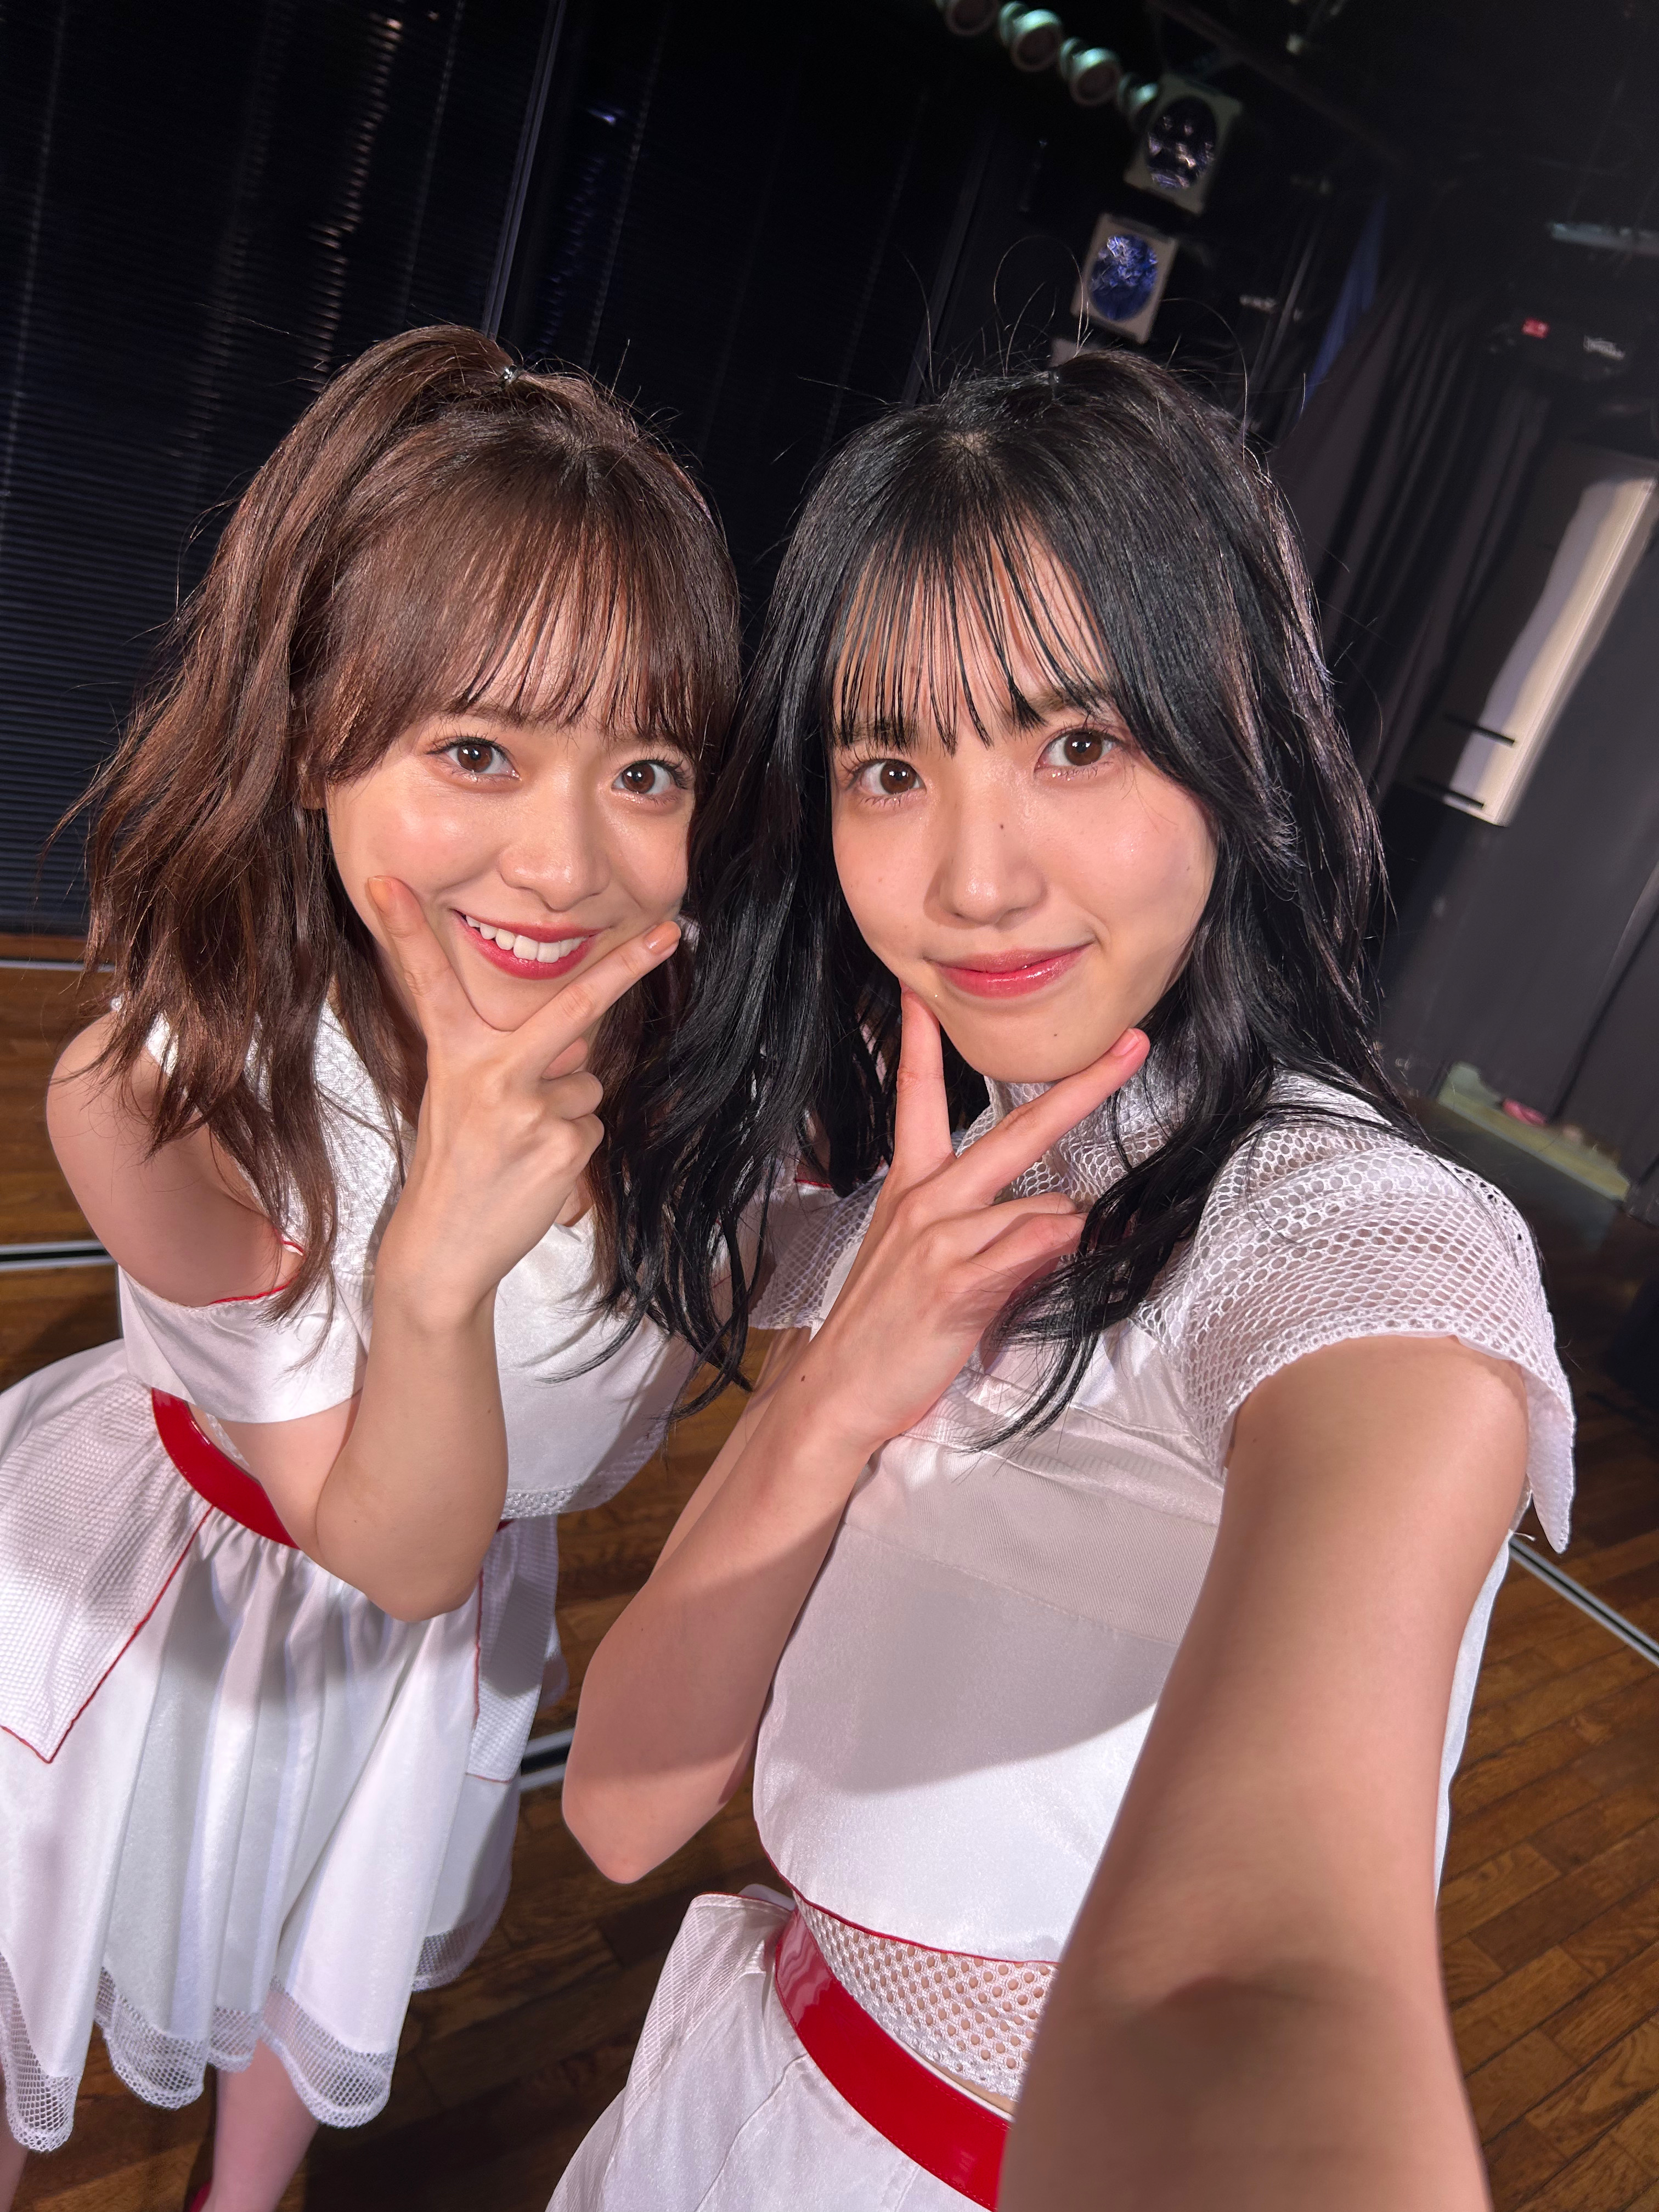 AKB48 Community Posts - 「何回だって恋をする」公演💗 楽しかった